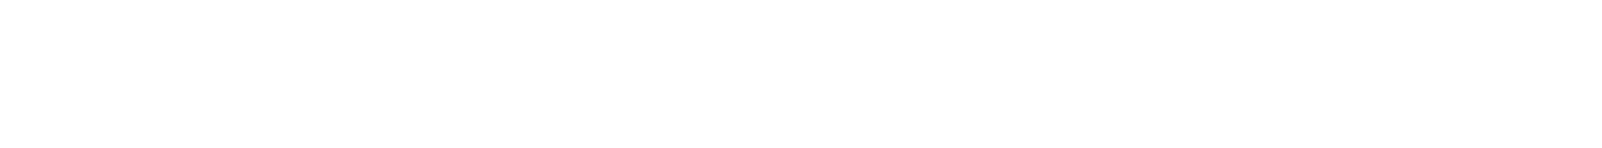 Lennar logo large for dark backgrounds (transparent PNG)